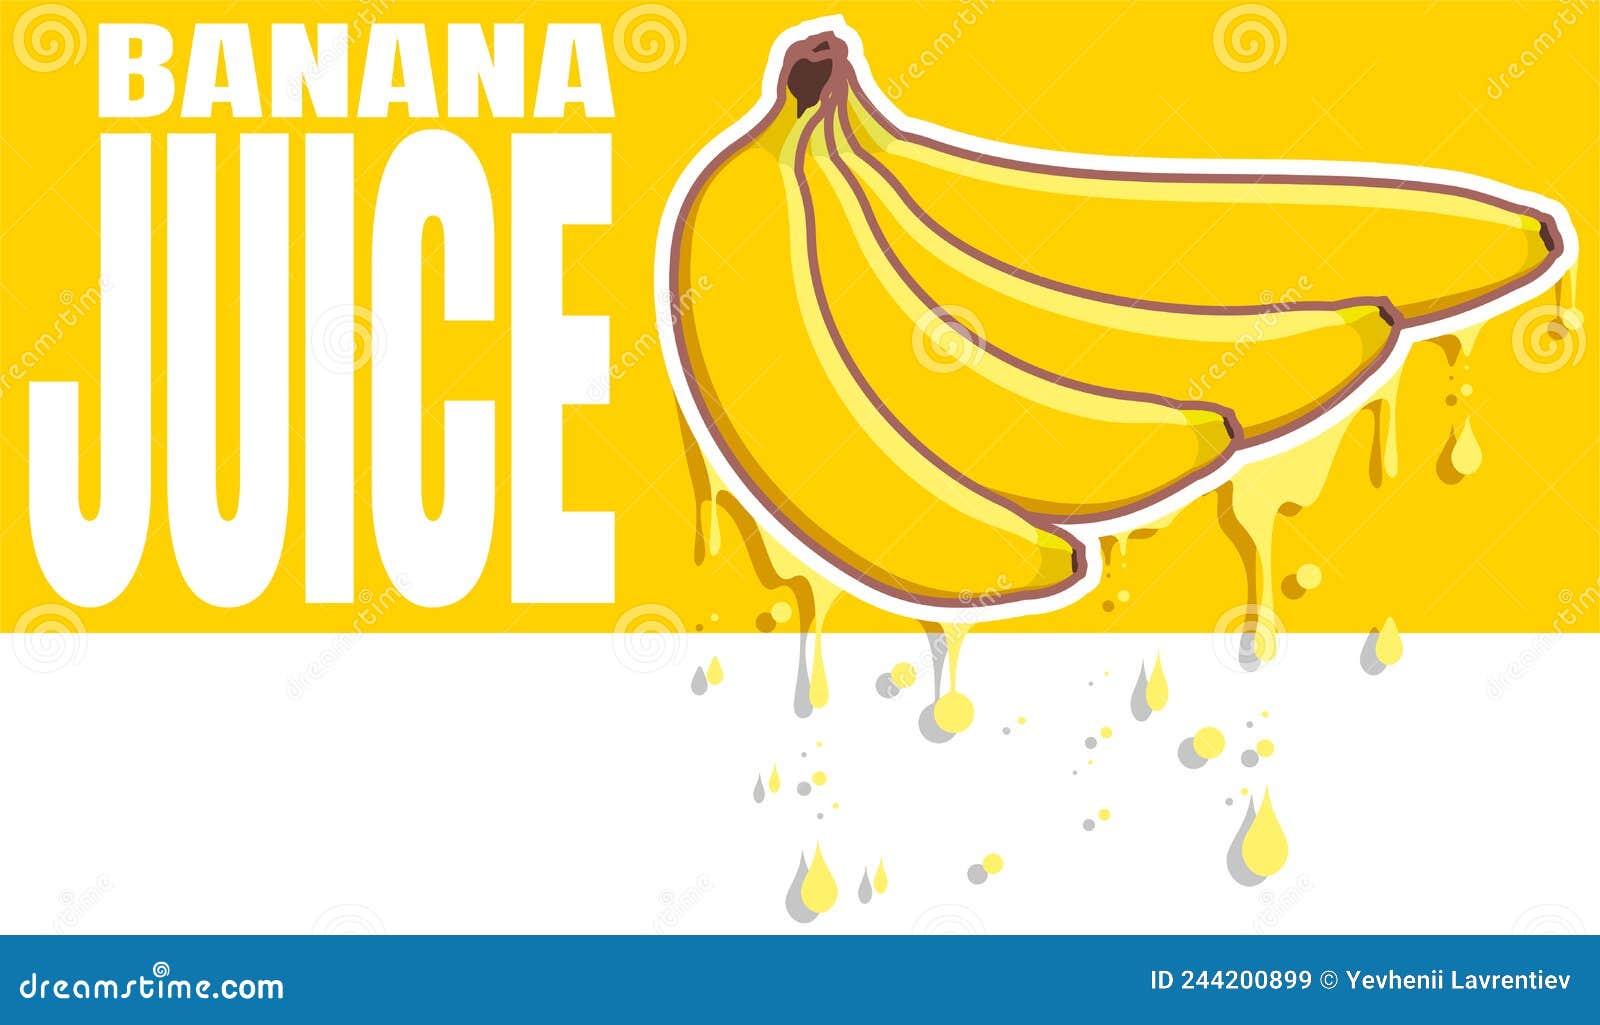 Banana Images - Free Download on Freepik